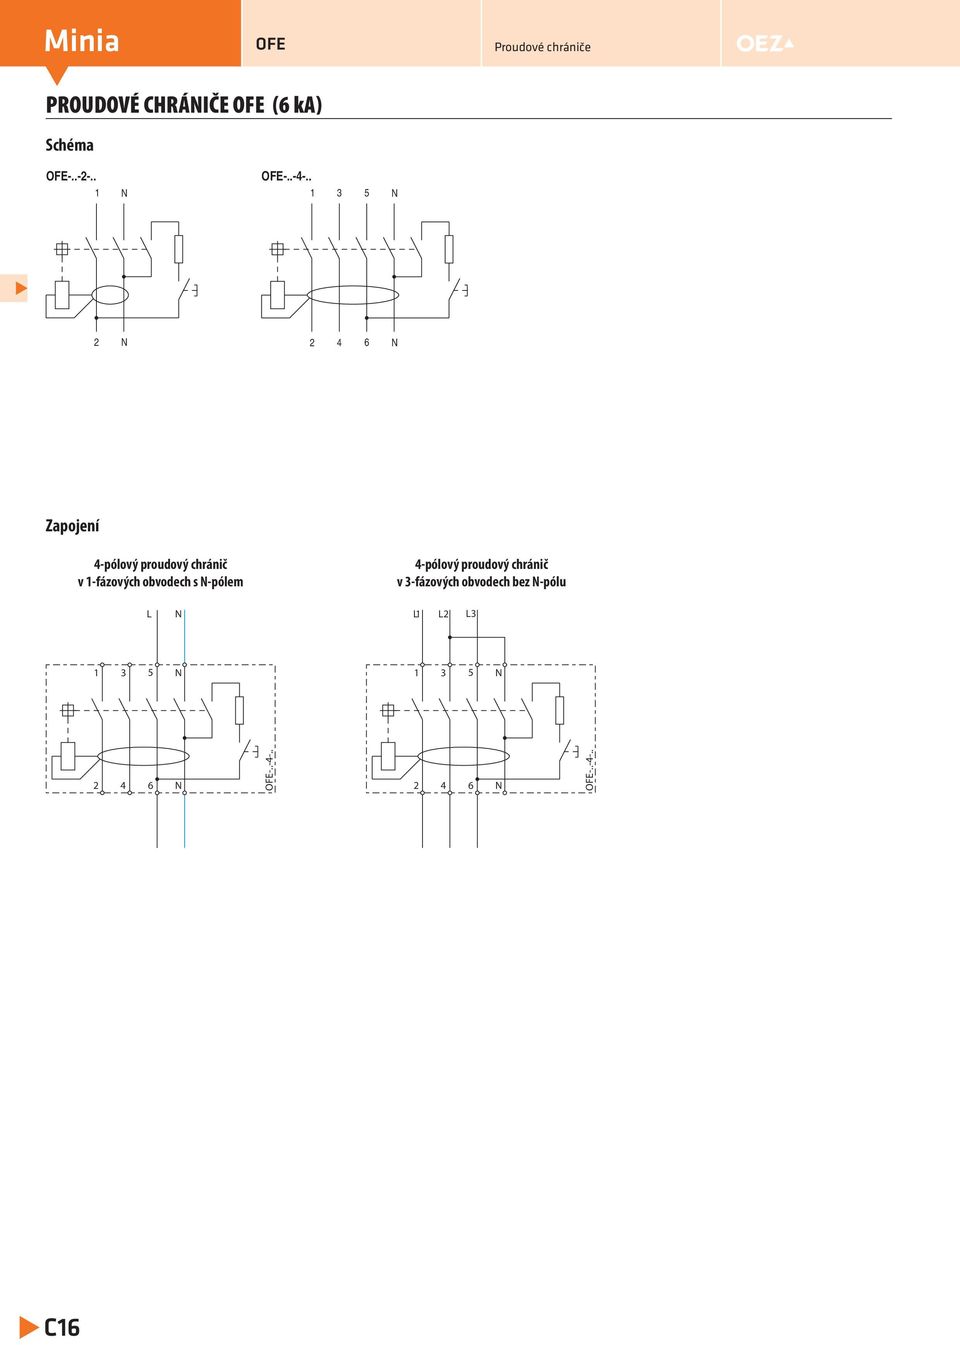 obvodech s N-pólem 4-pólový proudový chránič v 3-fázových obvodech